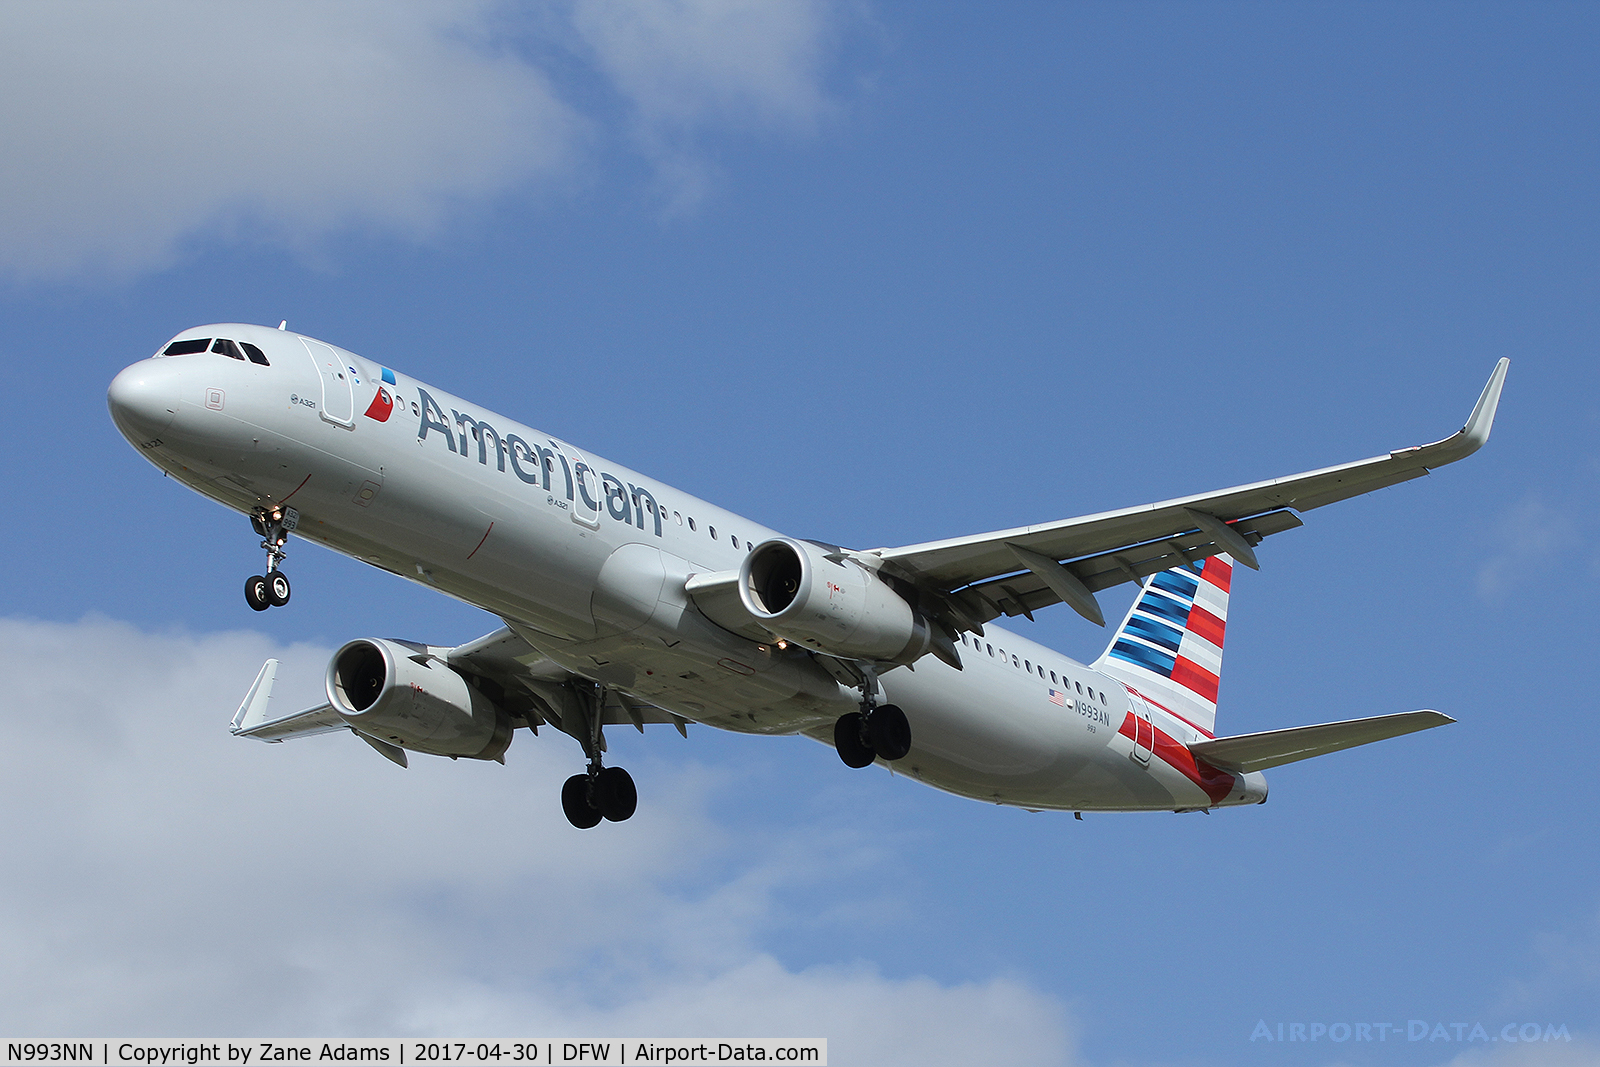 N993NN, 2016 Boeing 737-823 C/N 33340, Arriving at DFW Airport